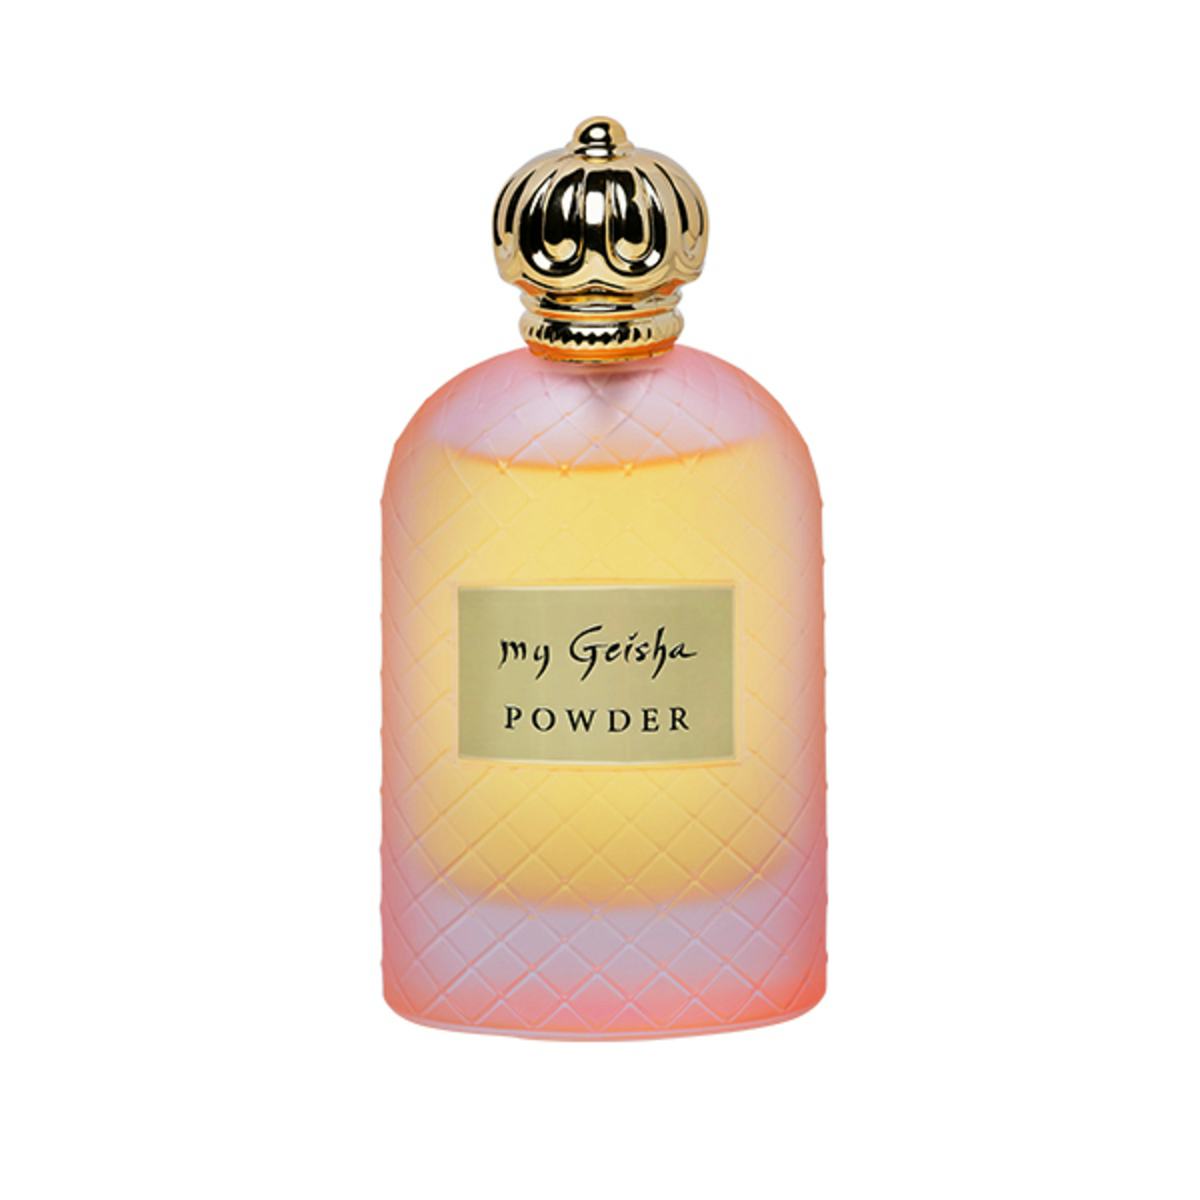 Extrait de parfum "Powder" 100 ml, handwerkliches Produkt für den Direktverkauf in der Schweiz